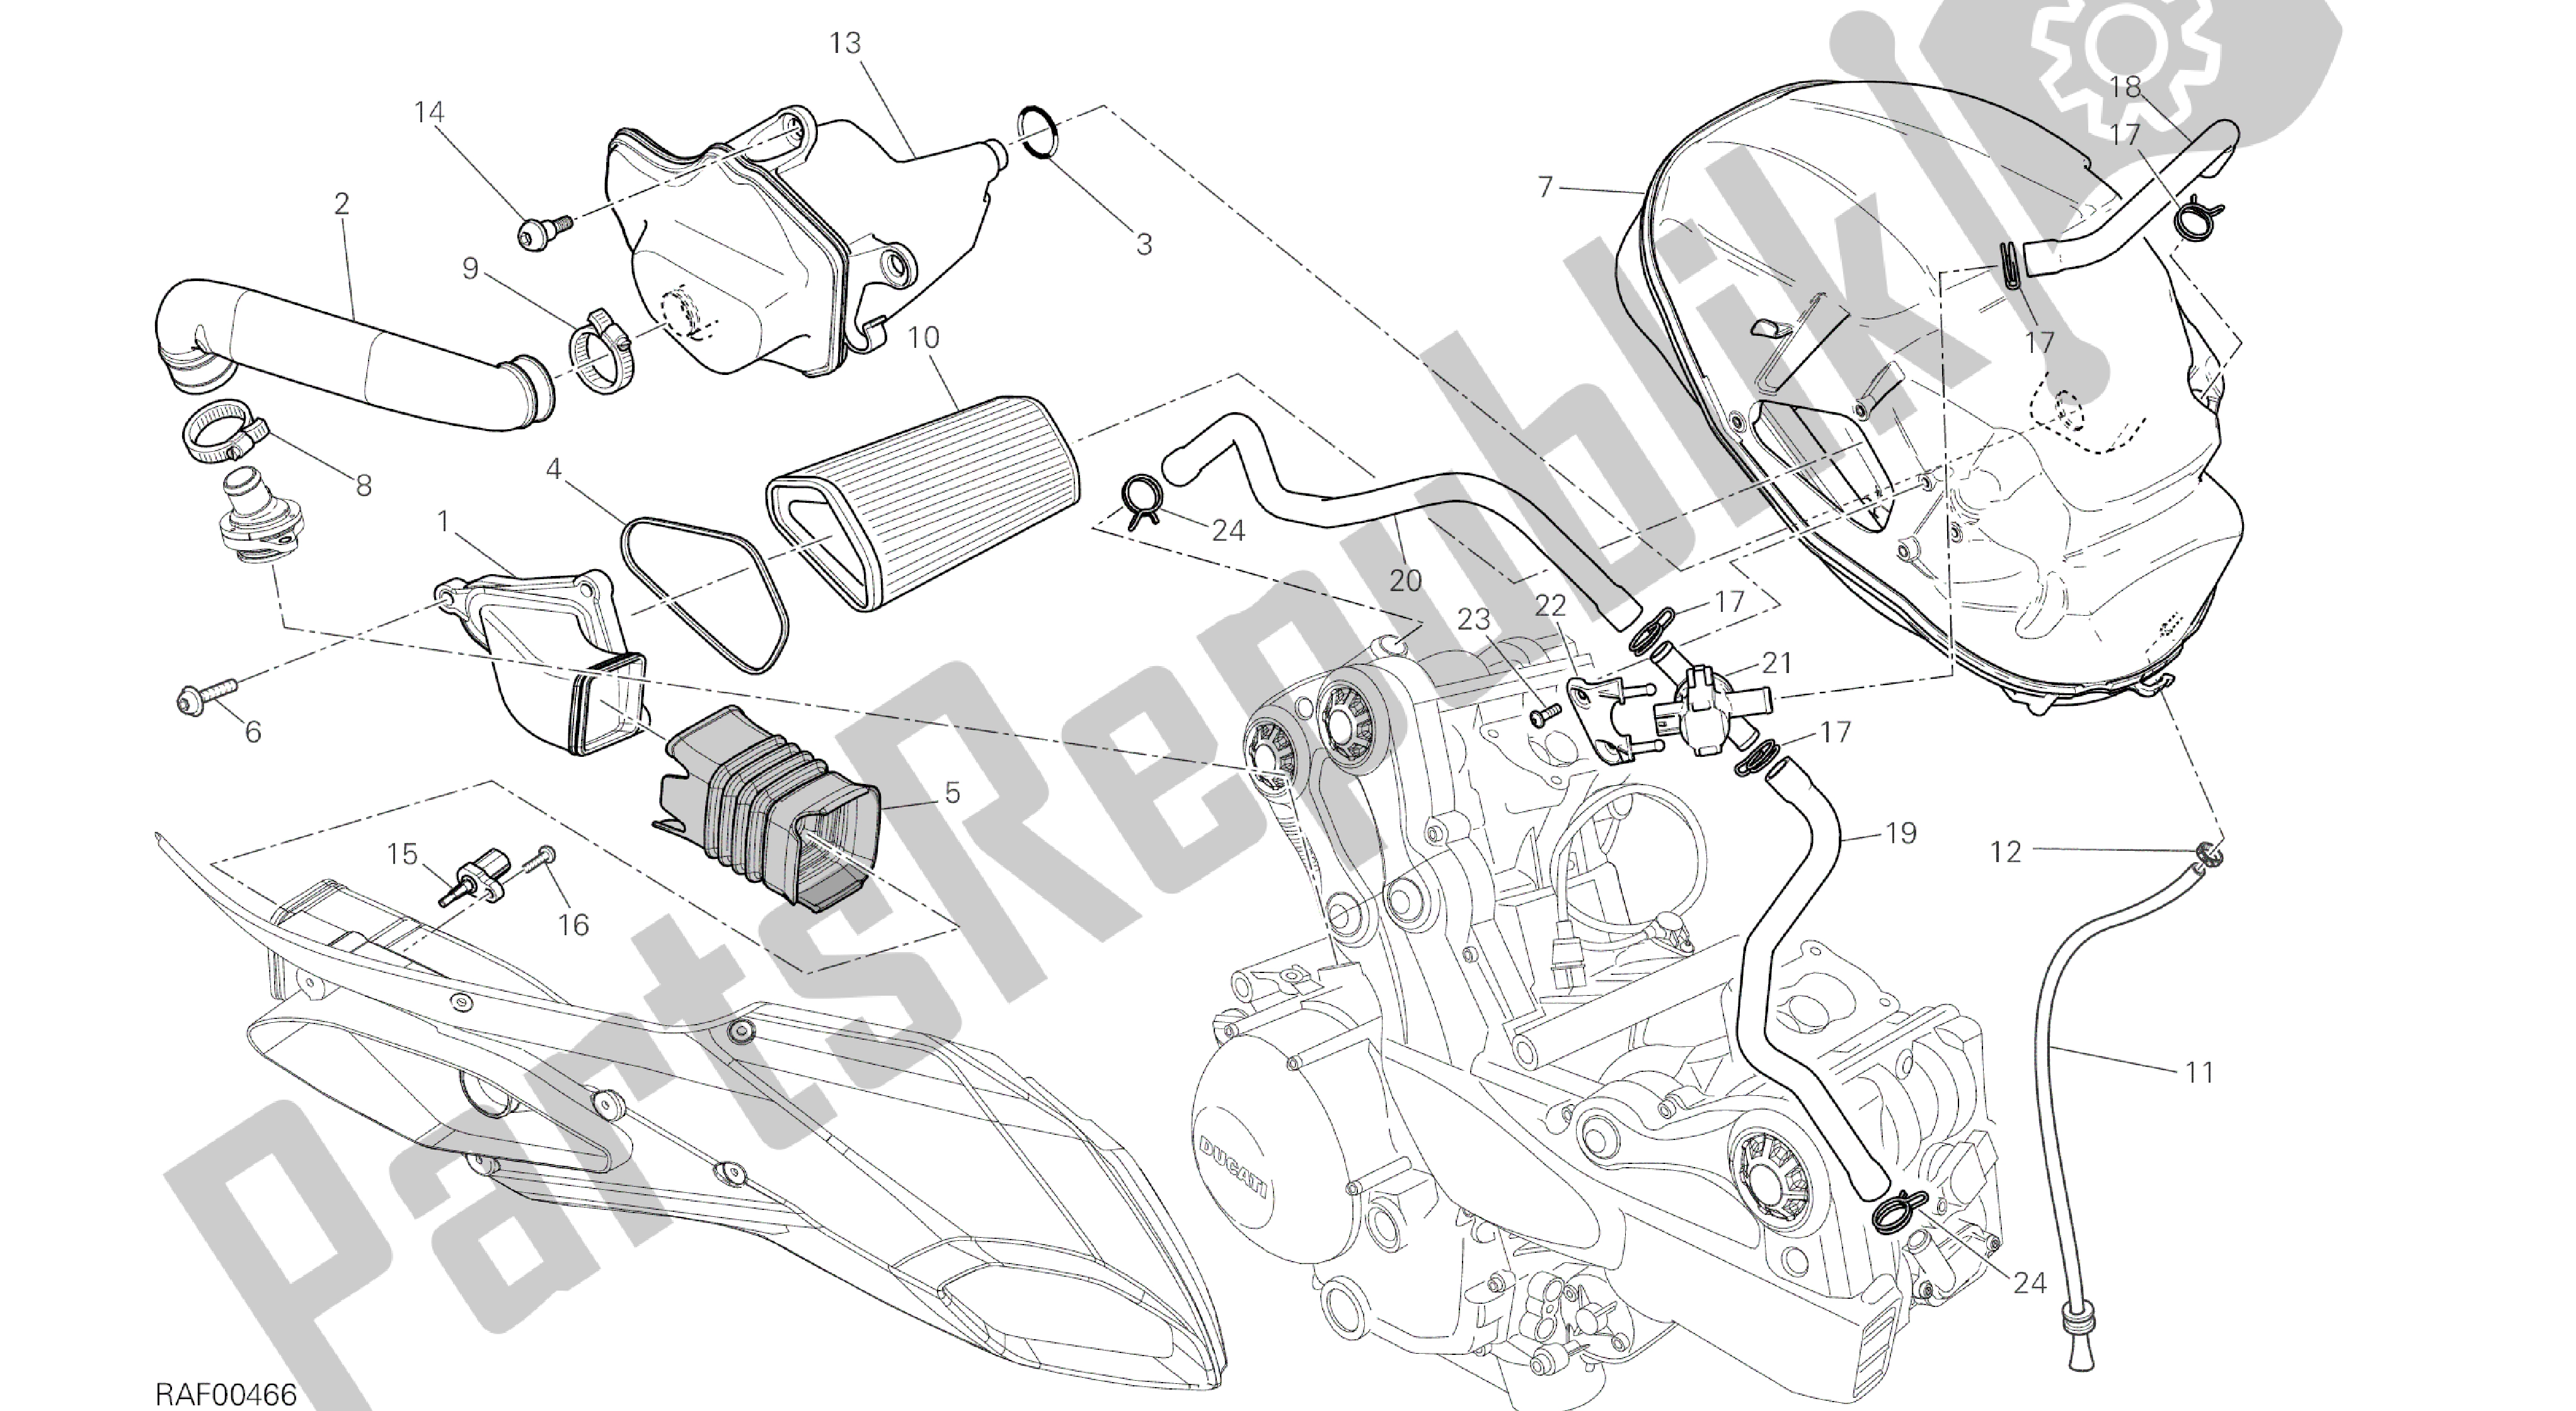 Todas las partes para Dibujo 029 - Ingesta [mod: Ms1200st; Xst: Marco De Grupo Aus, Chn, Eur, Fra, Jap, Tha] de Ducati Multistrada S Touring 1200 2014